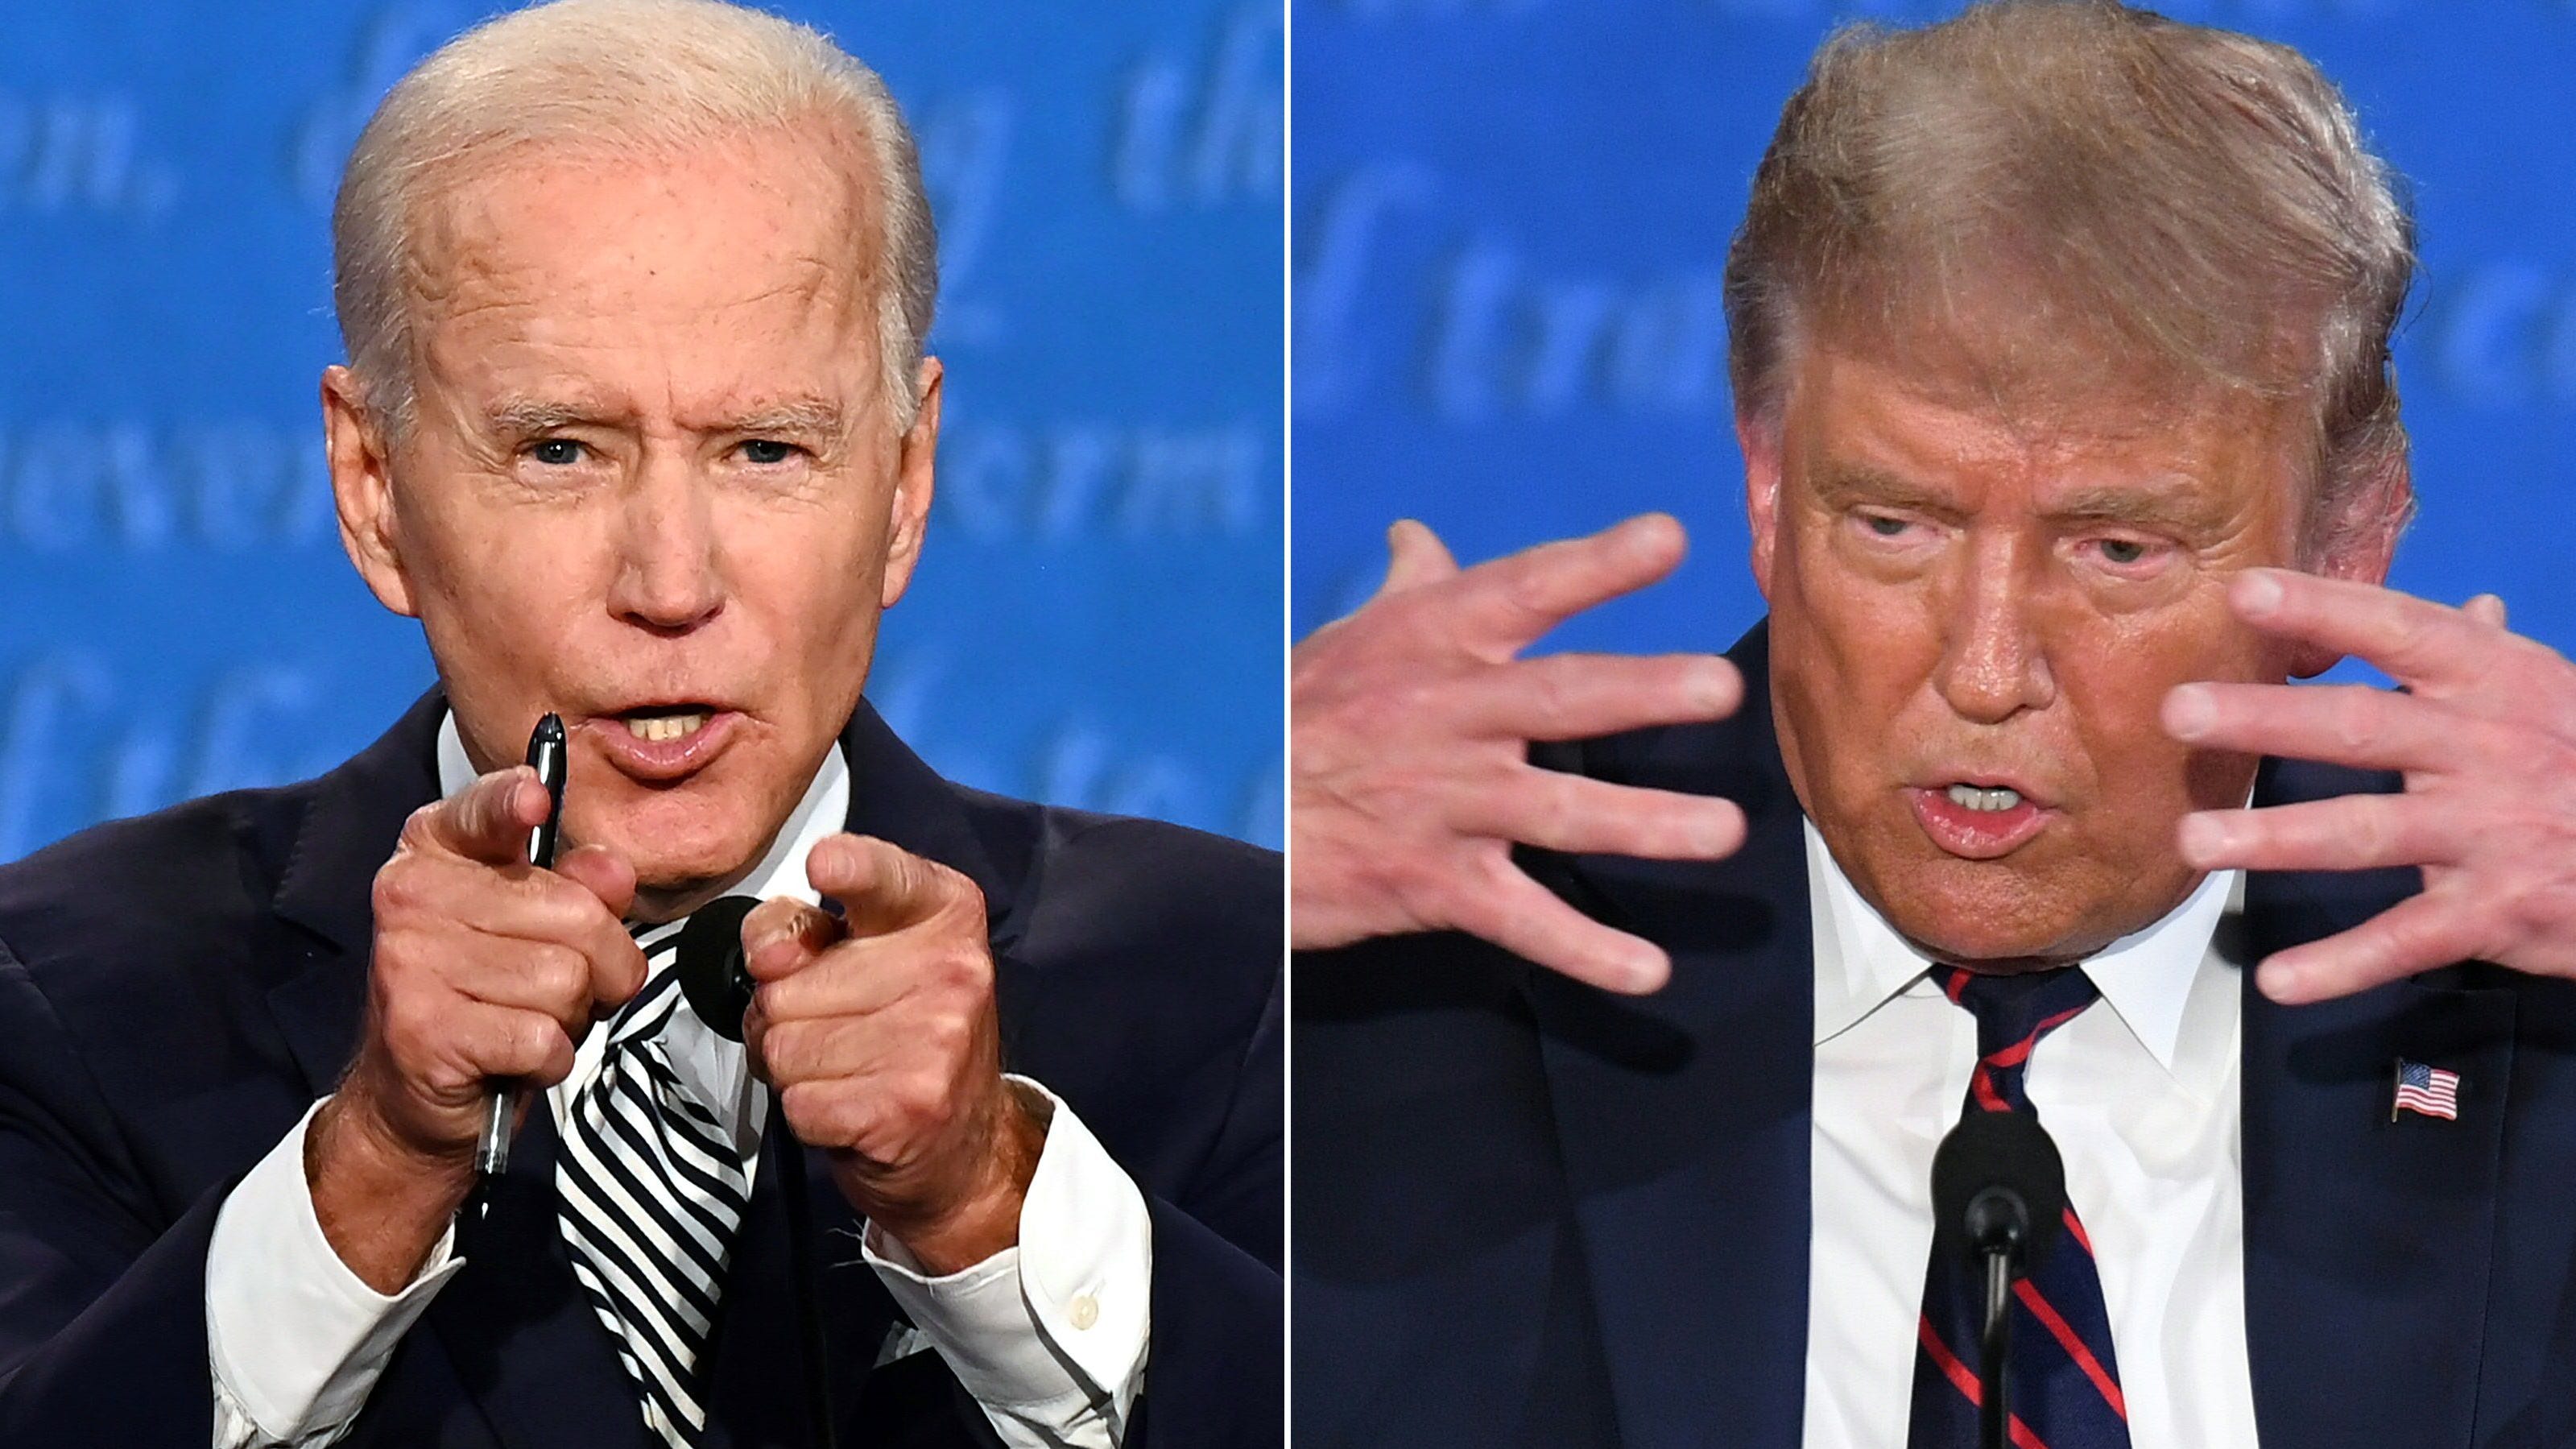 Presidential debate didn't help Trump catch Biden, but horror show scared America